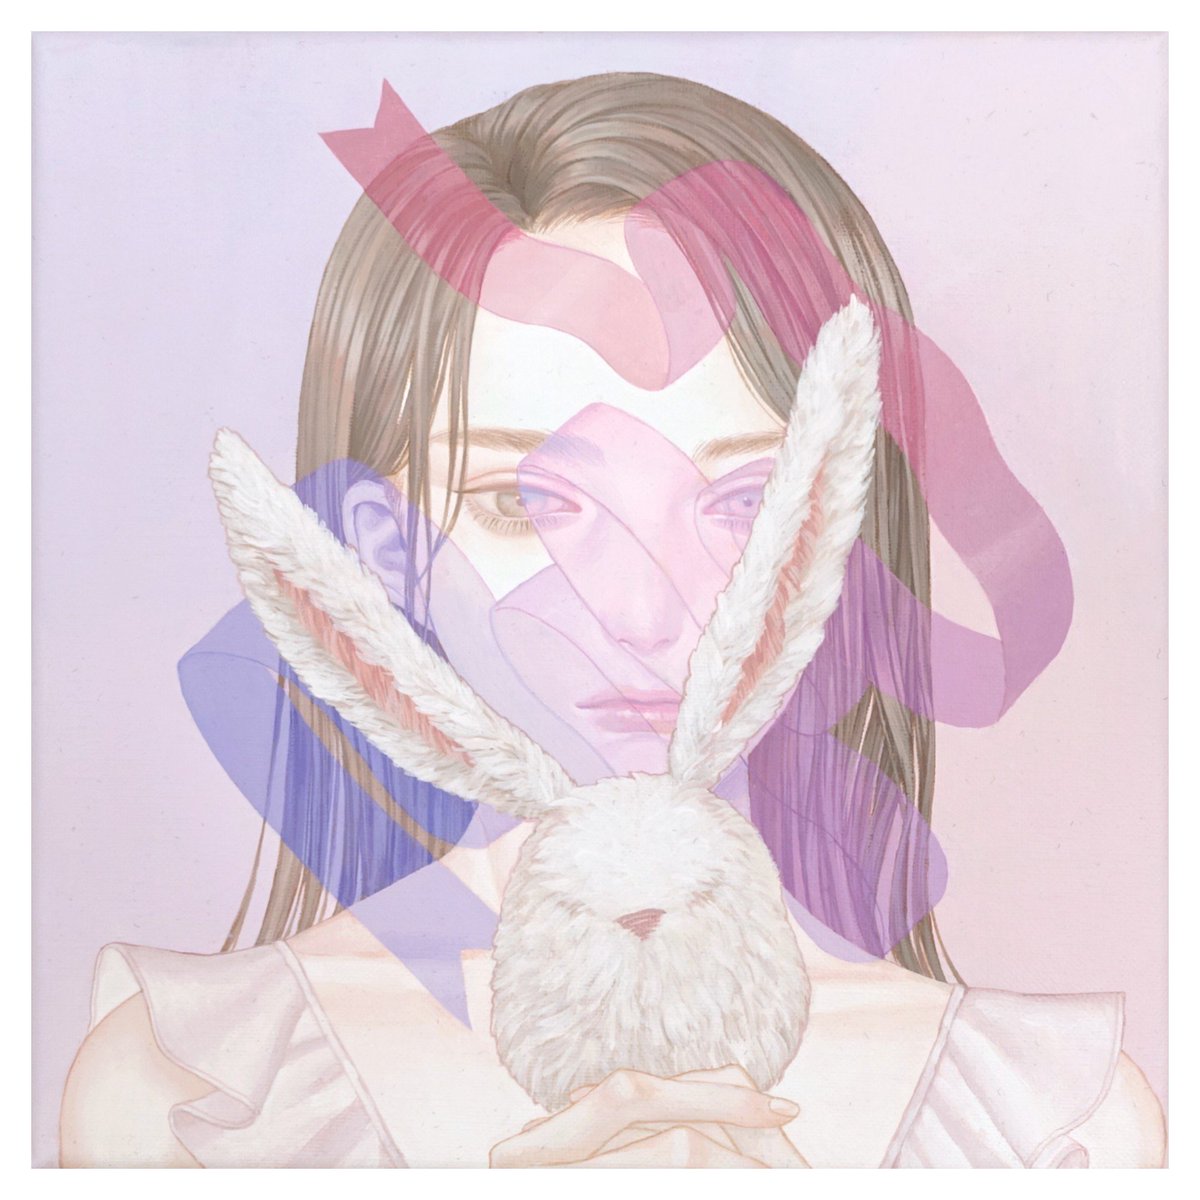 「何卒… #私を布教して 
キャンバスにアクリル
Acrylic on canva」|紺野真弓 Mayumi Konnoのイラスト